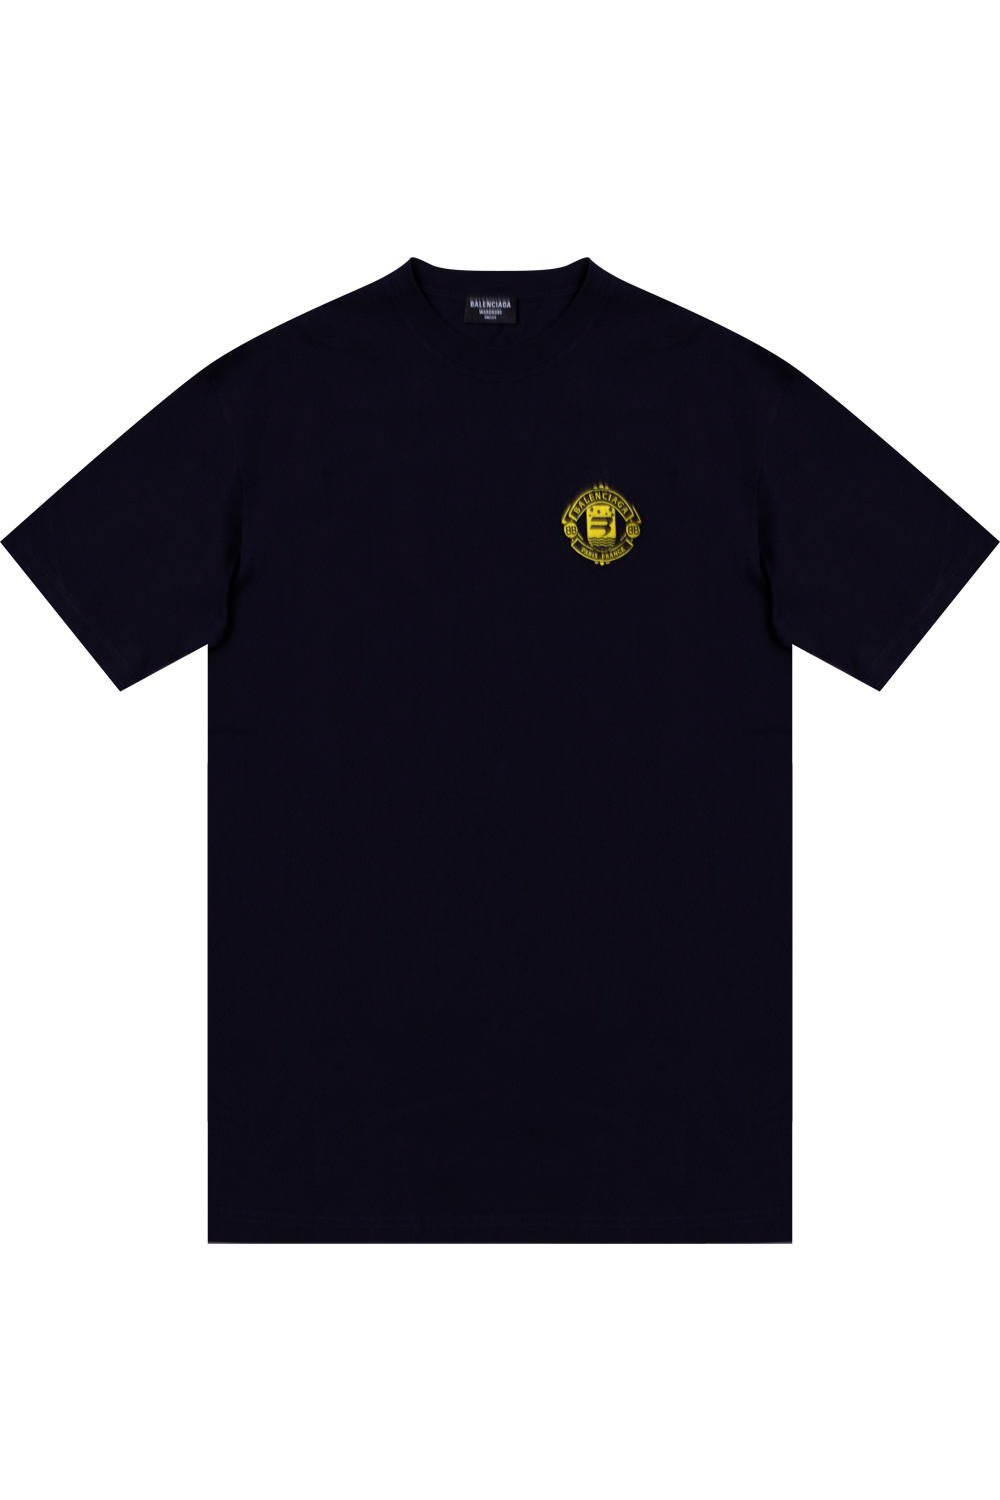 shirt mit und - Pailletten Balenciaga Religion Logo Black - T-Shirt Schwarz - Logo IetpShops in Germany True T